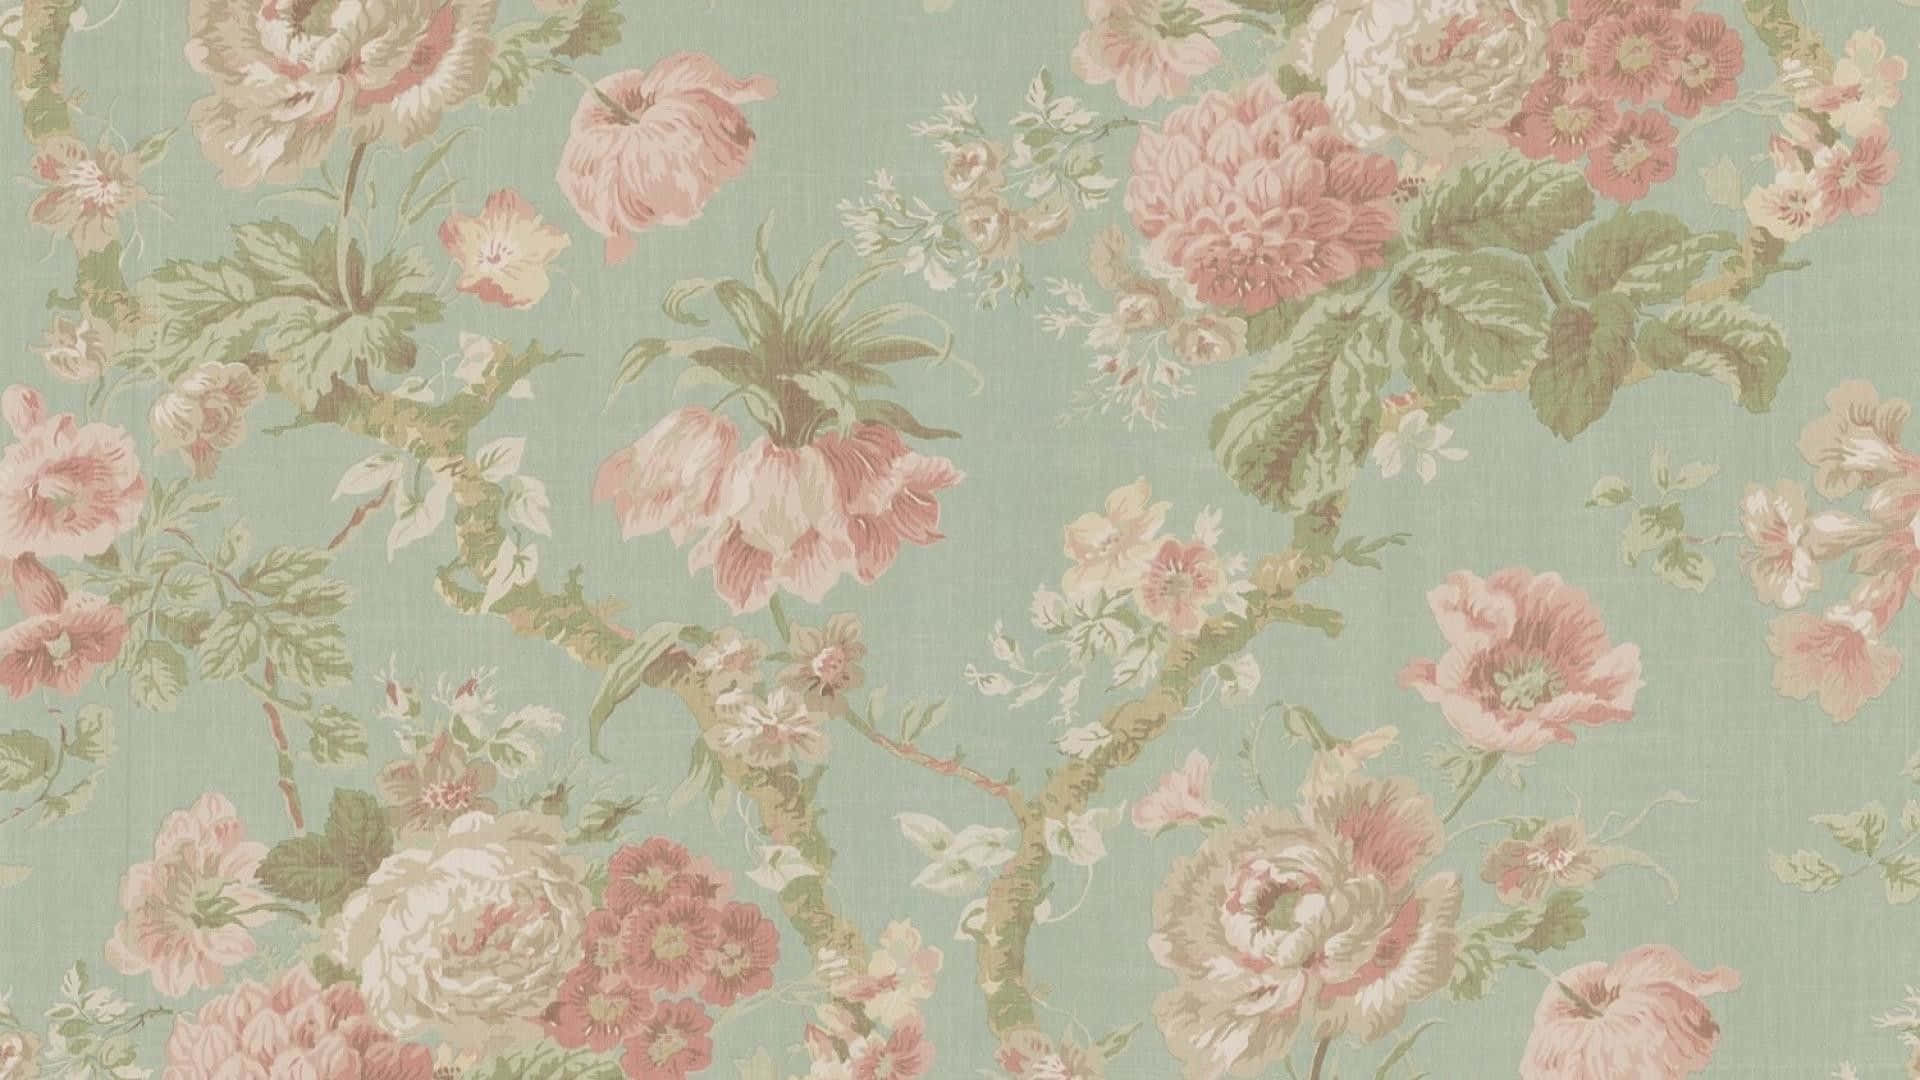 Image  Elegant Vintage Floral Background